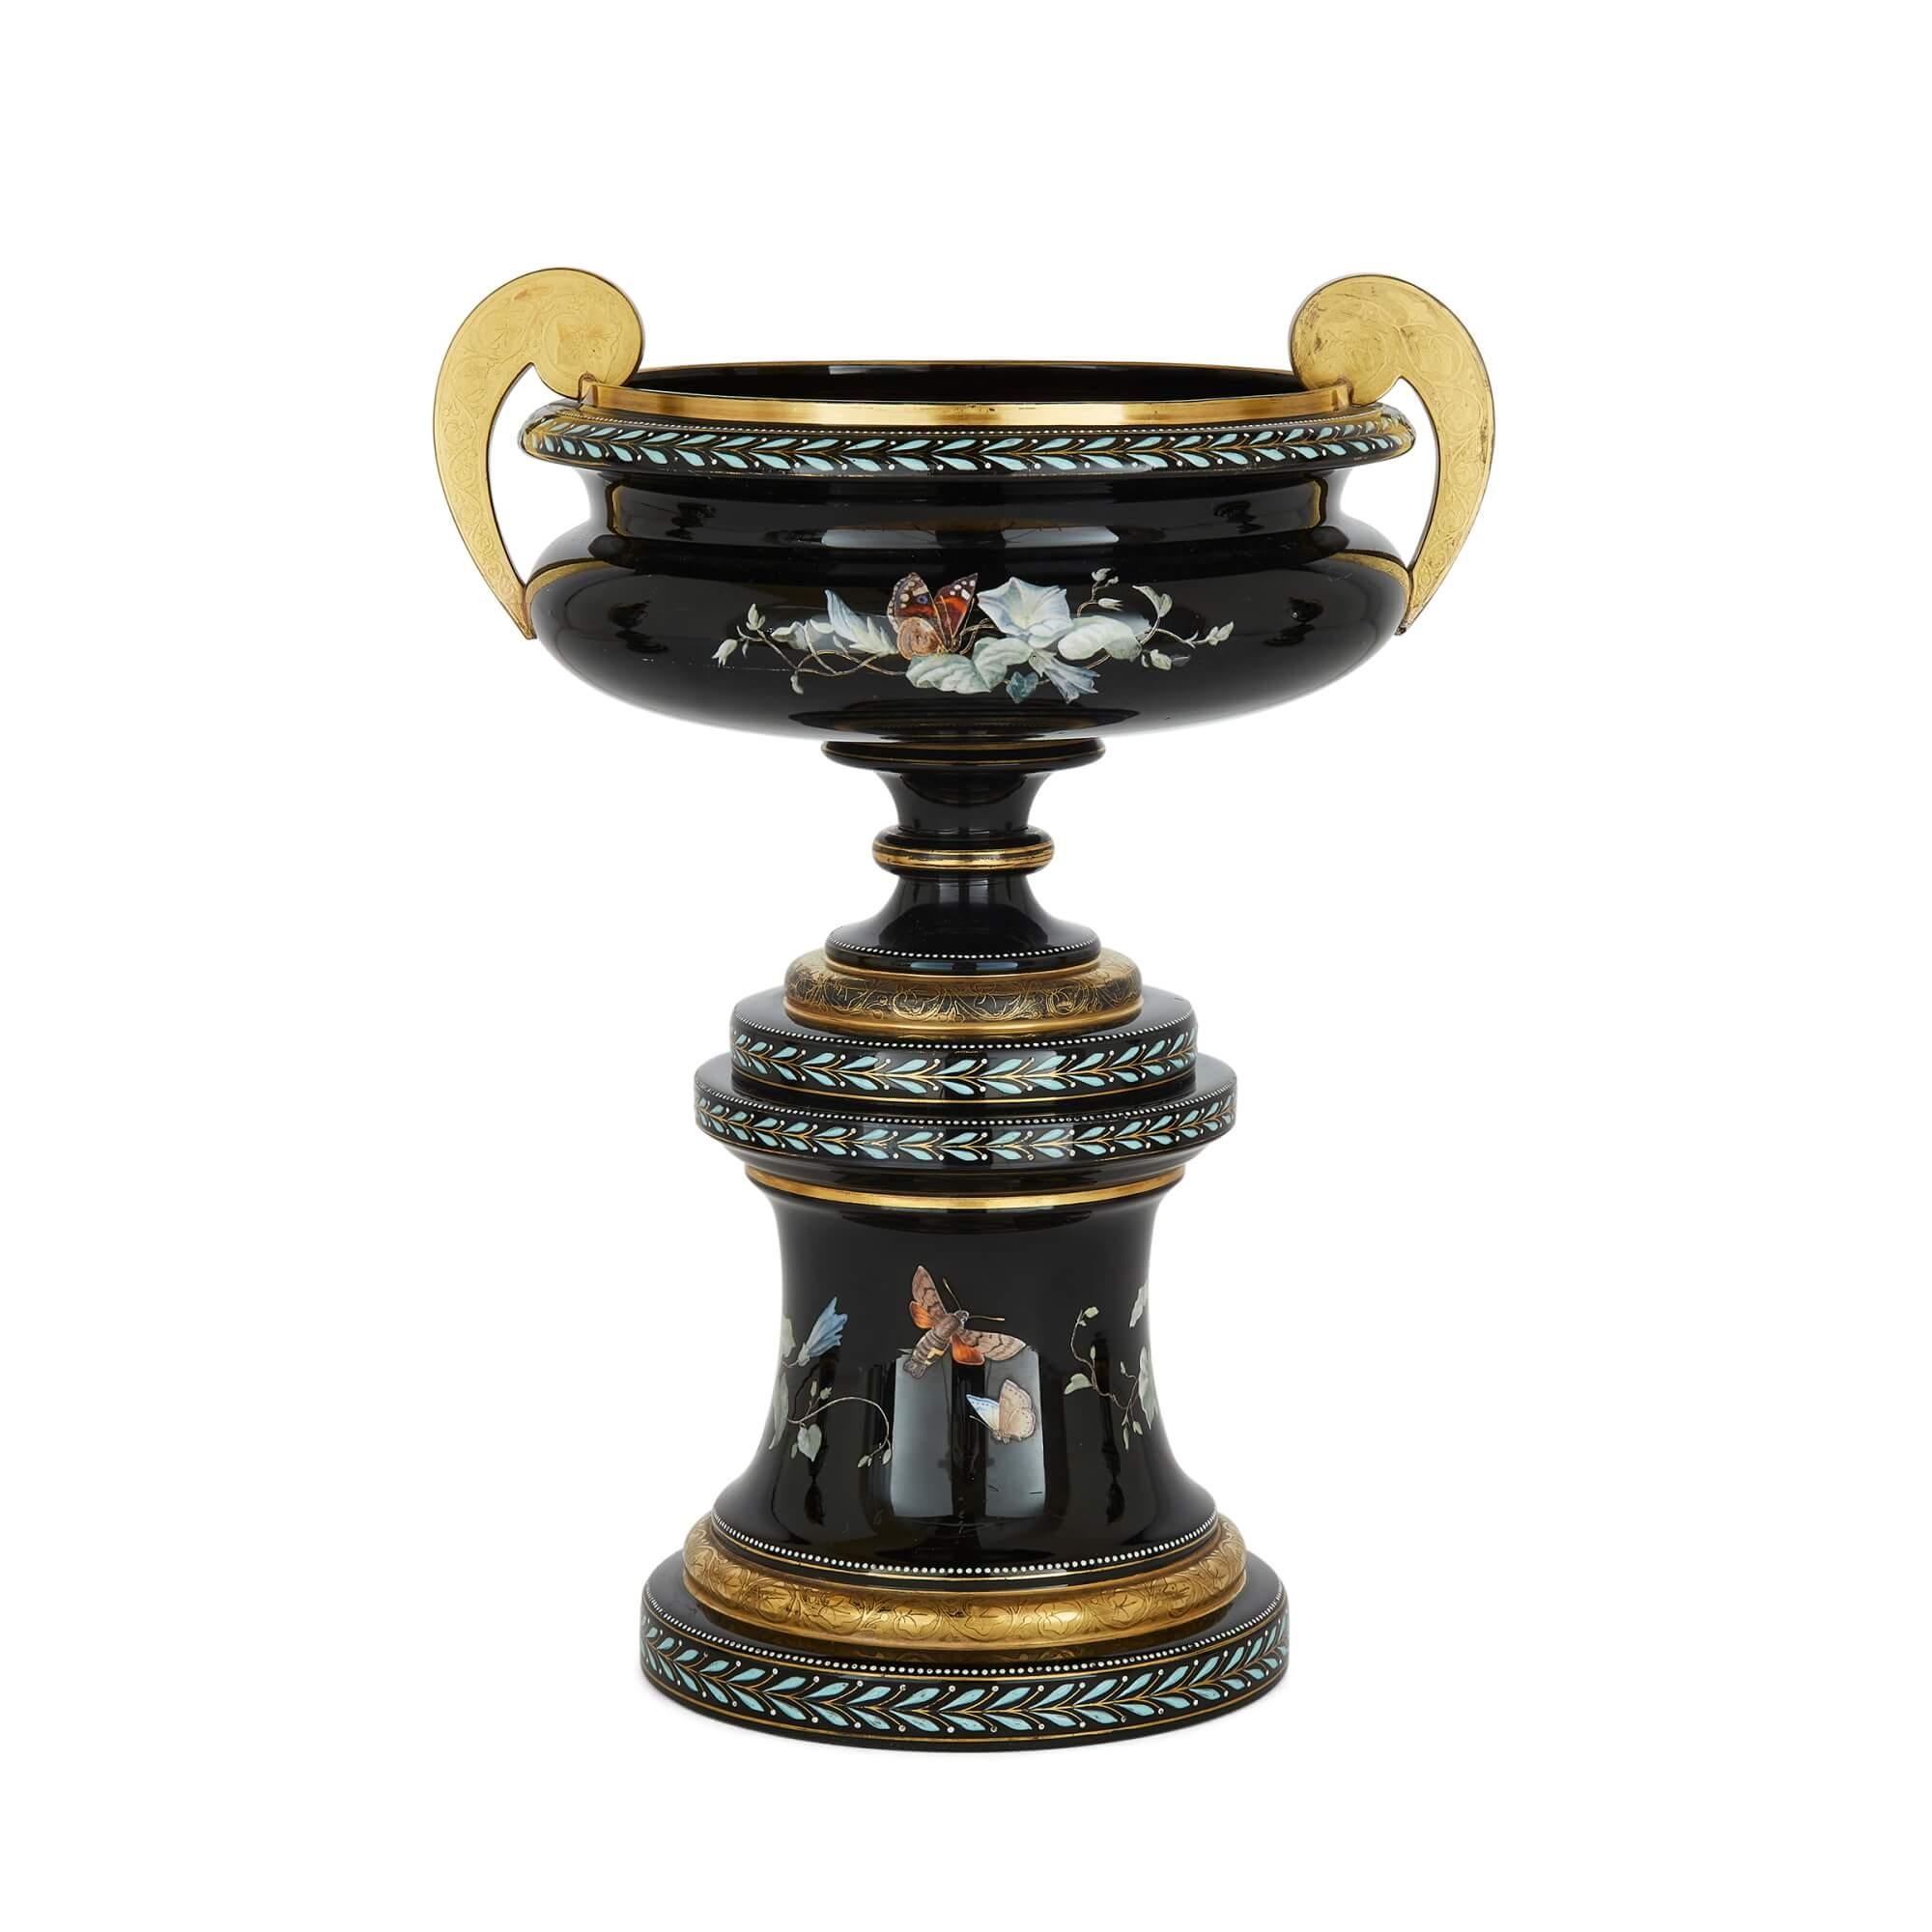 Dieses schöne Garniturset aus drei Vasen ist aus emailliertem schwarzem Glas gefertigt und stammt aus dem späten neunzehnten Jahrhundert aus Böhmen. Sie wird der Gräflich Schaffgotsch'schen Josephinenhütte in Schreiberhau, Schlesien, zugeschrieben